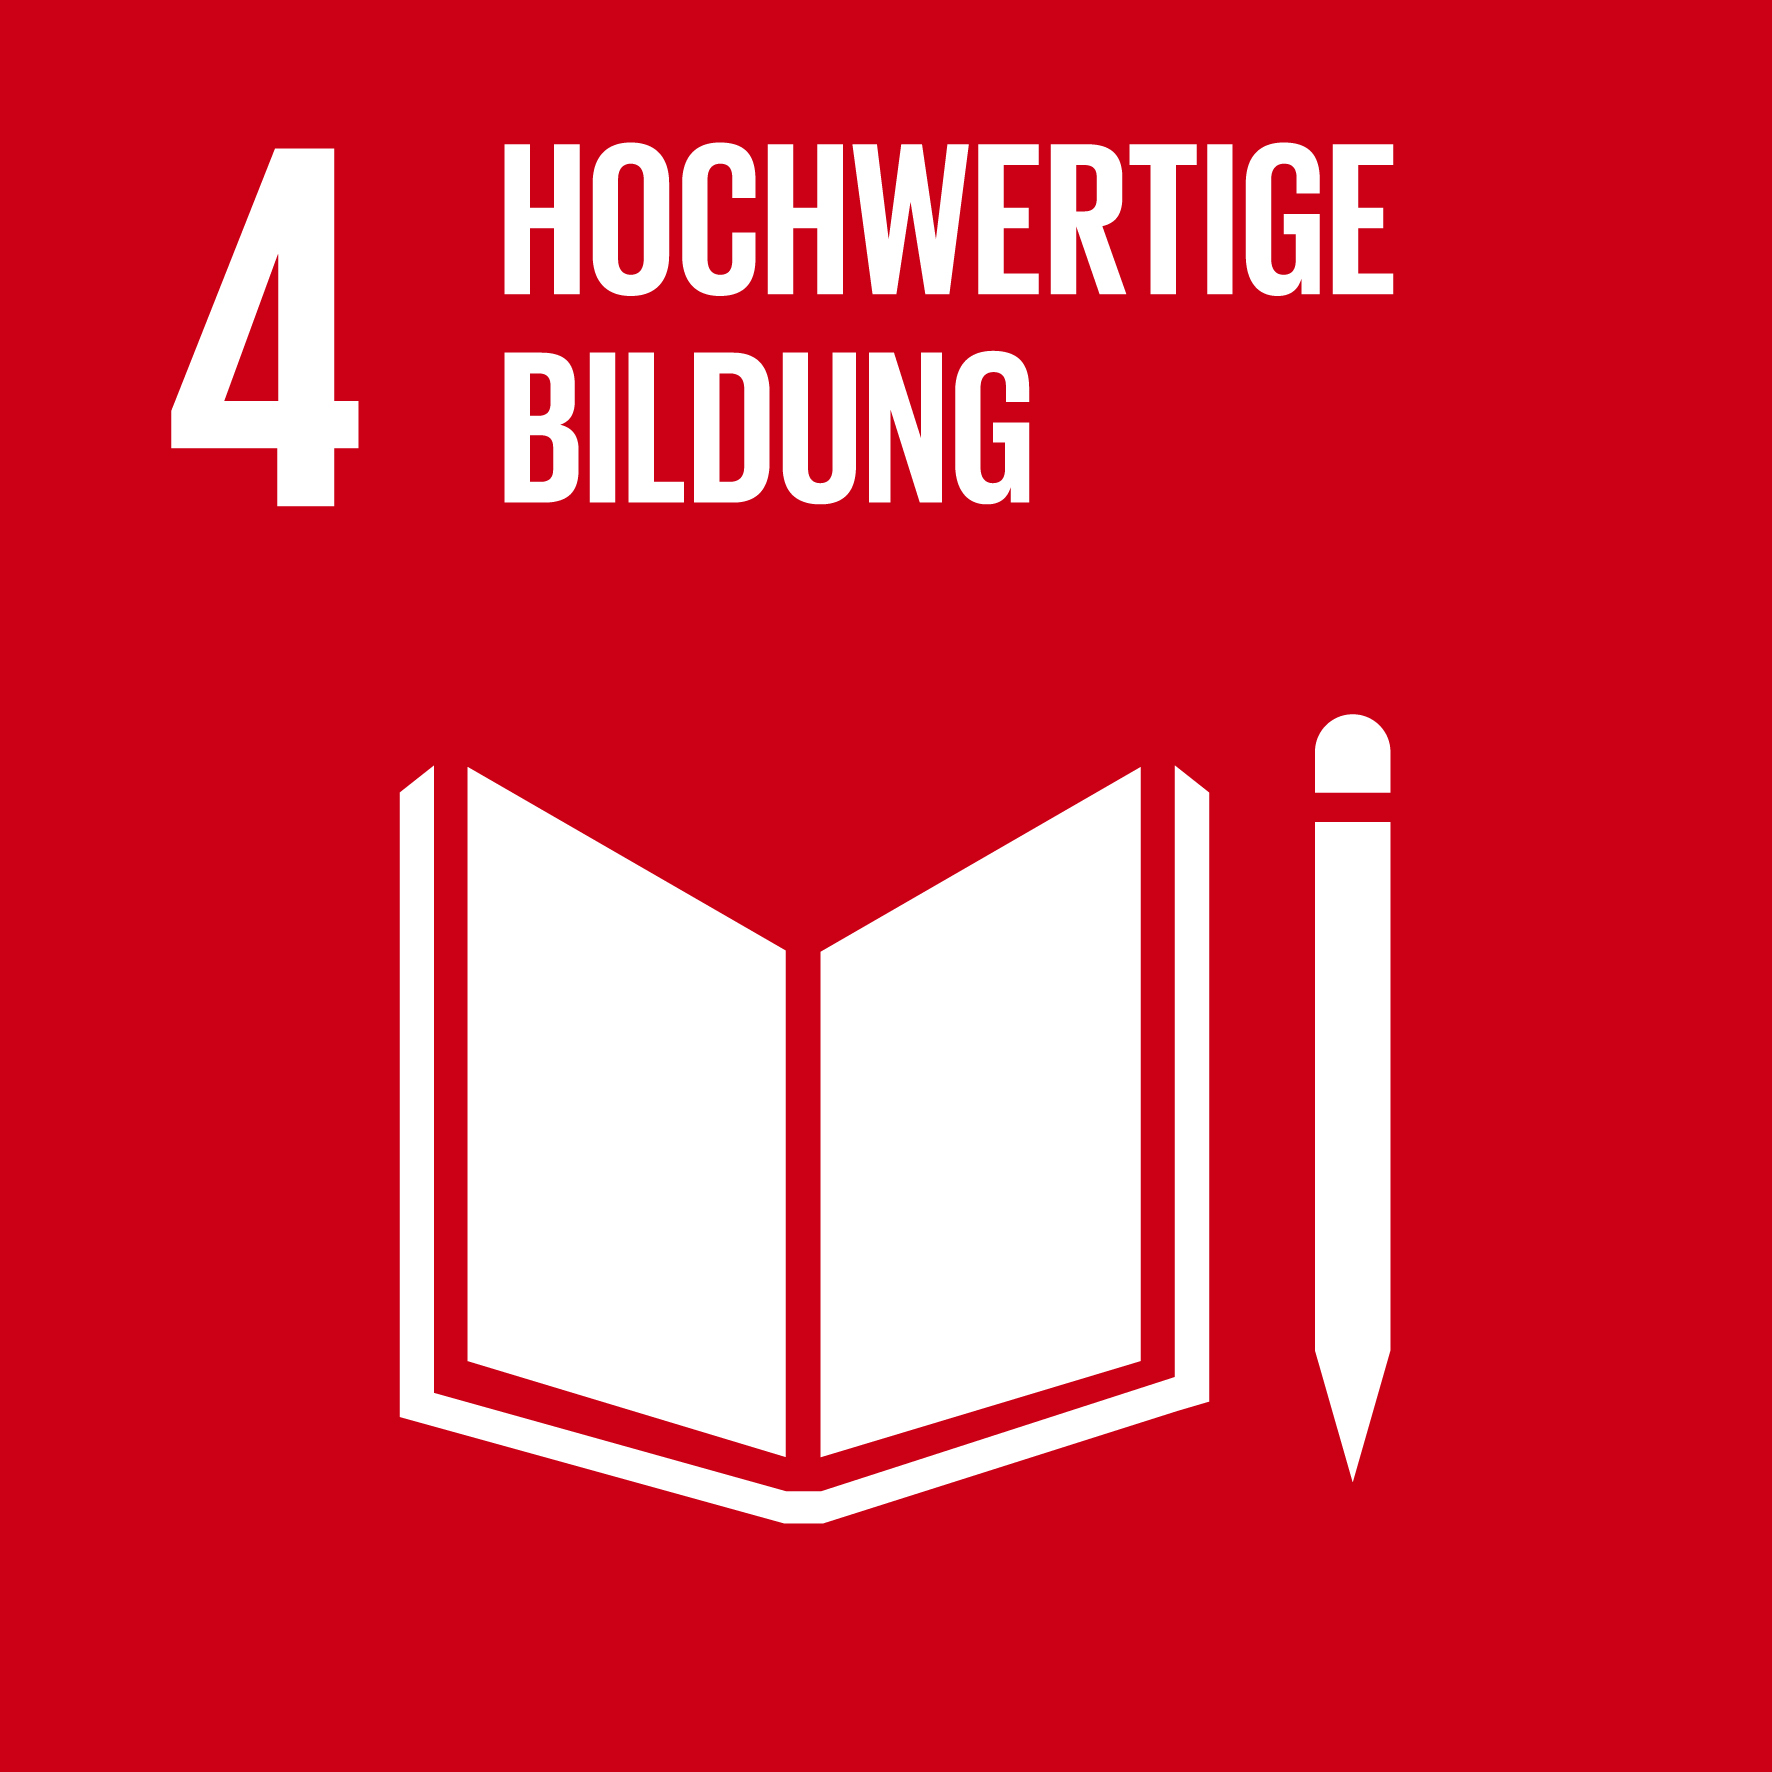 SDG 4: Hochwertige Bildung